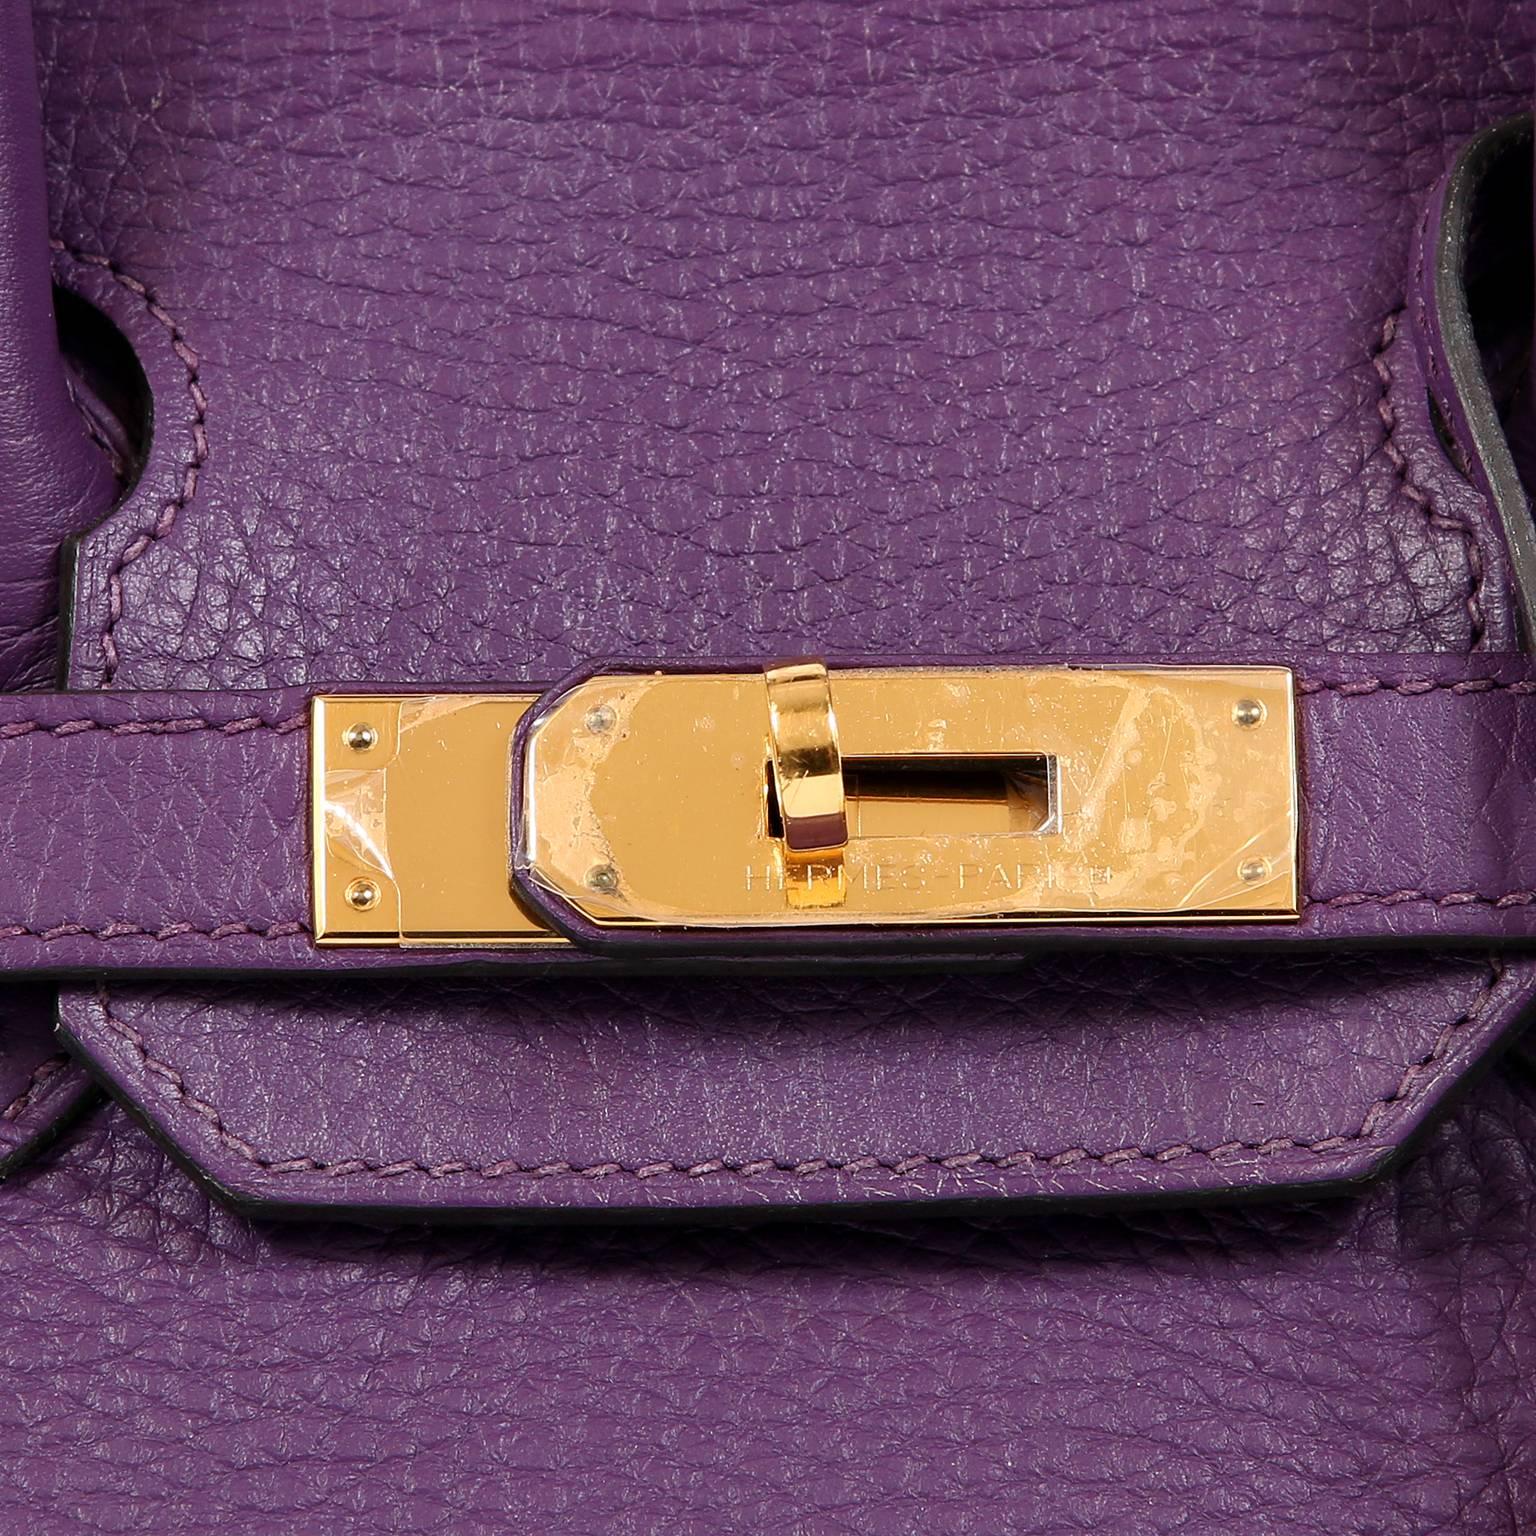 Hermes Ultra Violet Togo 30 cm Birkin Bag with GHW For Sale 1